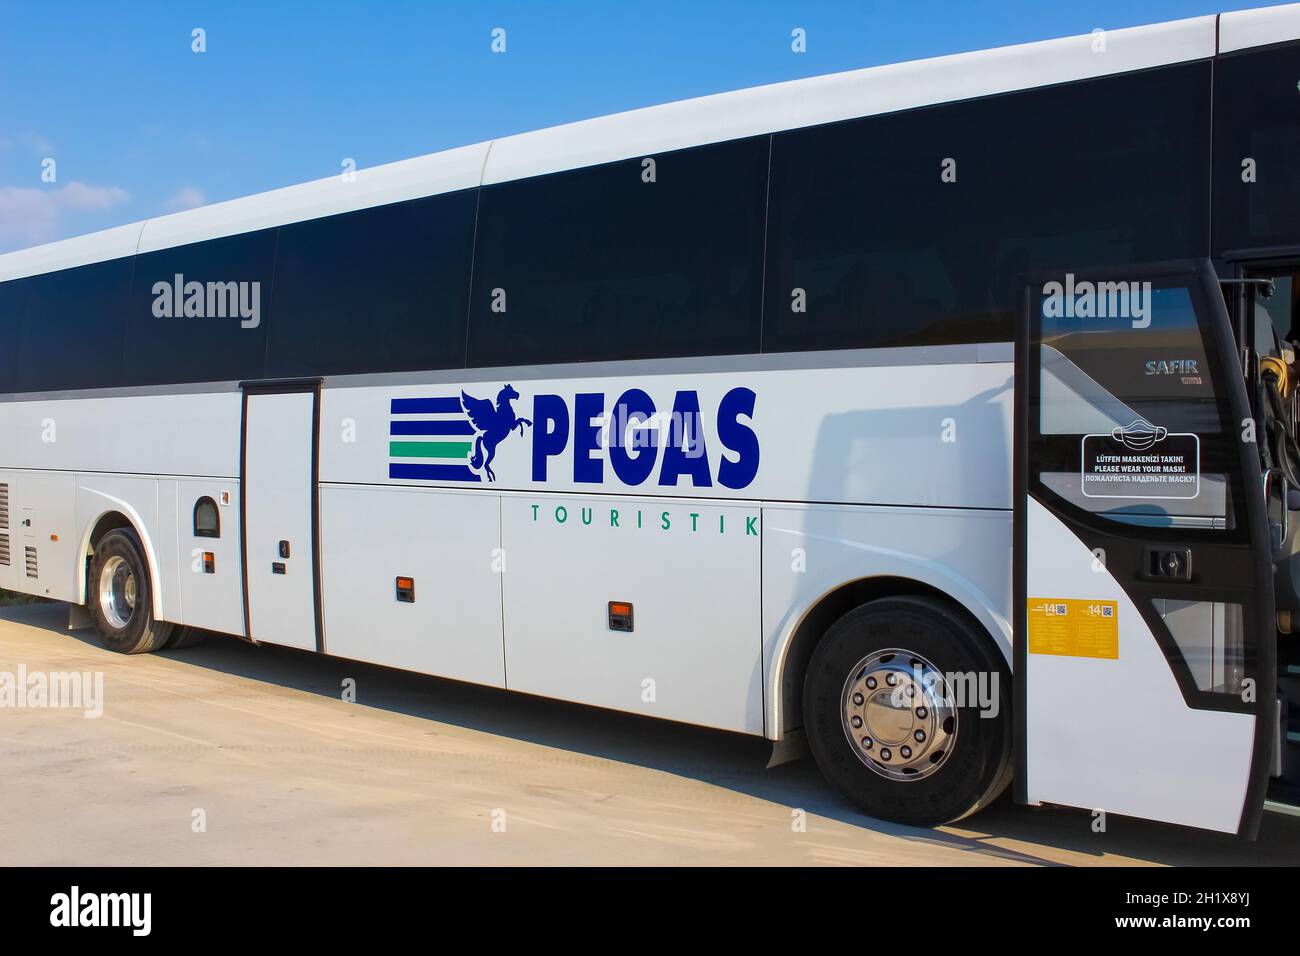 Antalya, Turquie - 20 mai 2021 : bus Pegas attendant les touristes venant en Turquie pour effectuer le transfert vers les hôtels. Banque D'Images